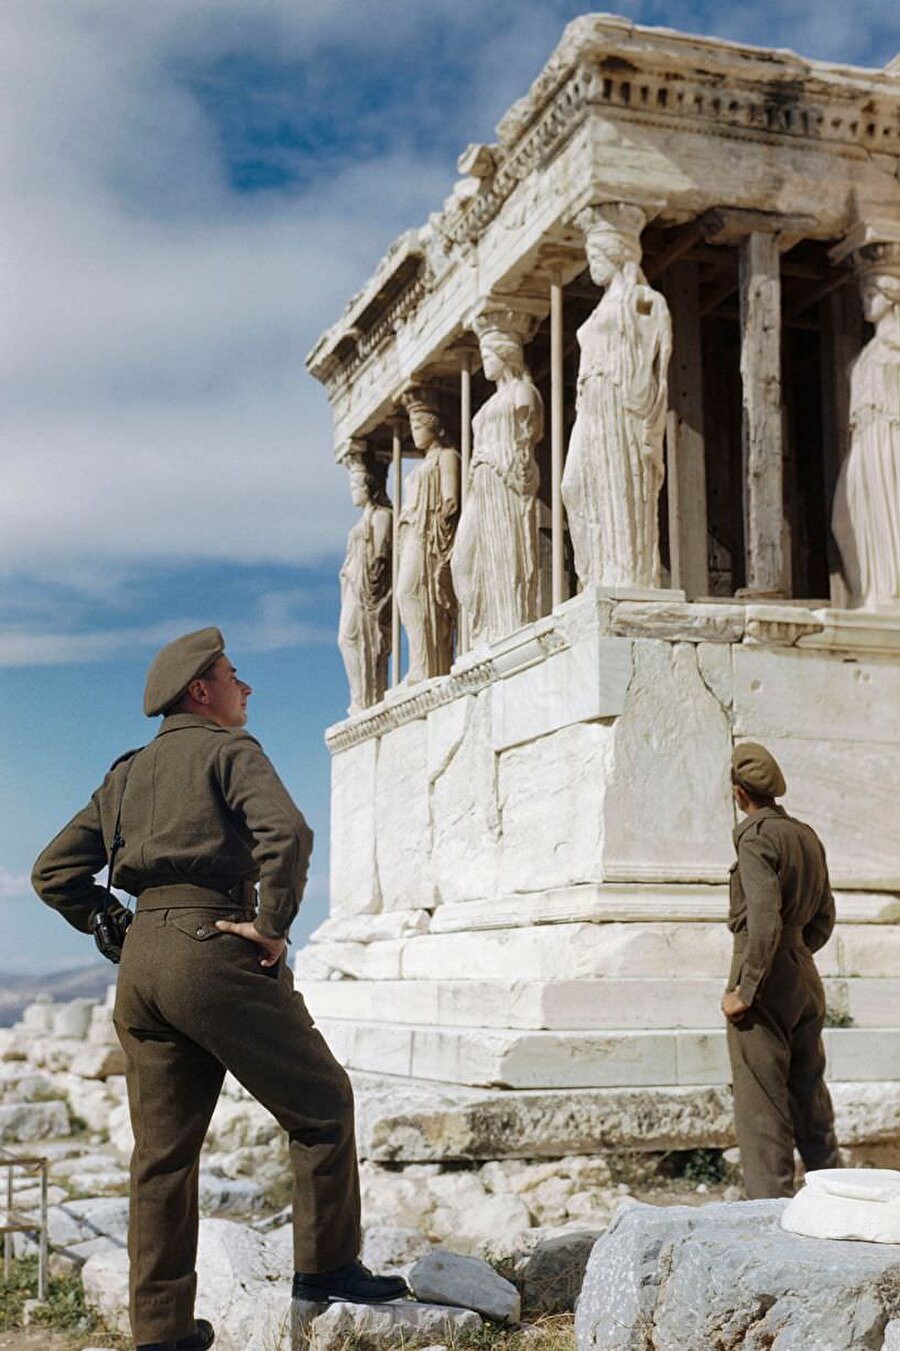 İngiliz askerler, Ekim 1944'te Atina'da geziler sırasında Akropolis'deki Caryatids'e hayranlıkla bakarken

                                    
                                    
                                    
                                
                                
                                